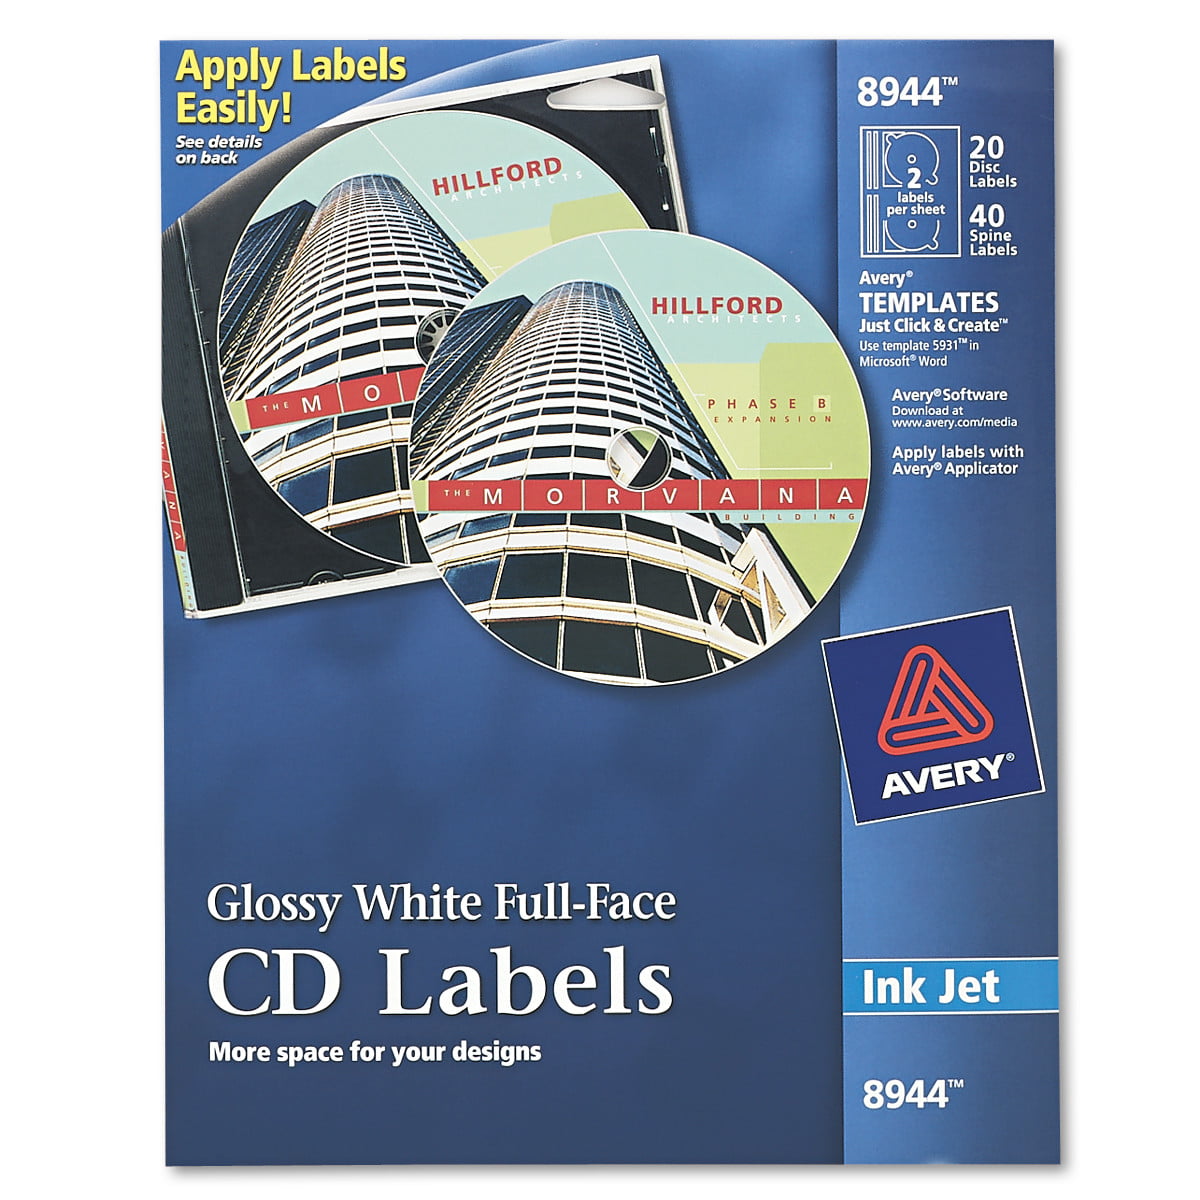 avery-inkjet-full-face-cd-labels-glossy-white-20-pack-walmart